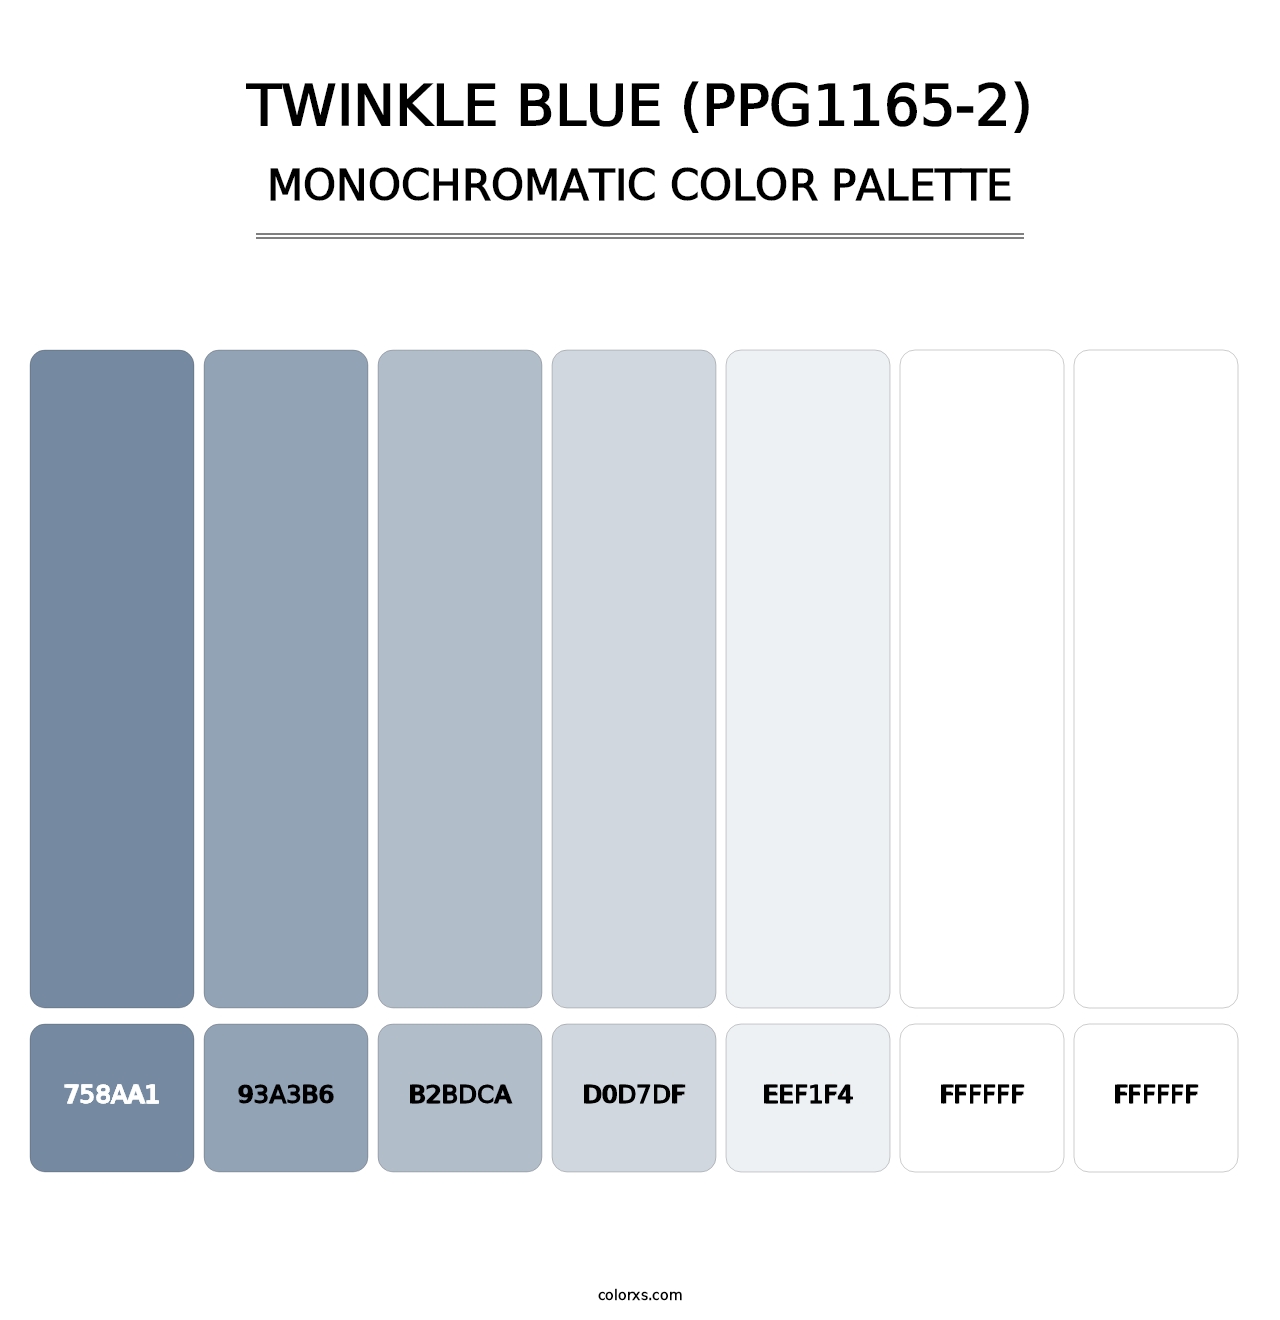 Twinkle Blue (PPG1165-2) - Monochromatic Color Palette